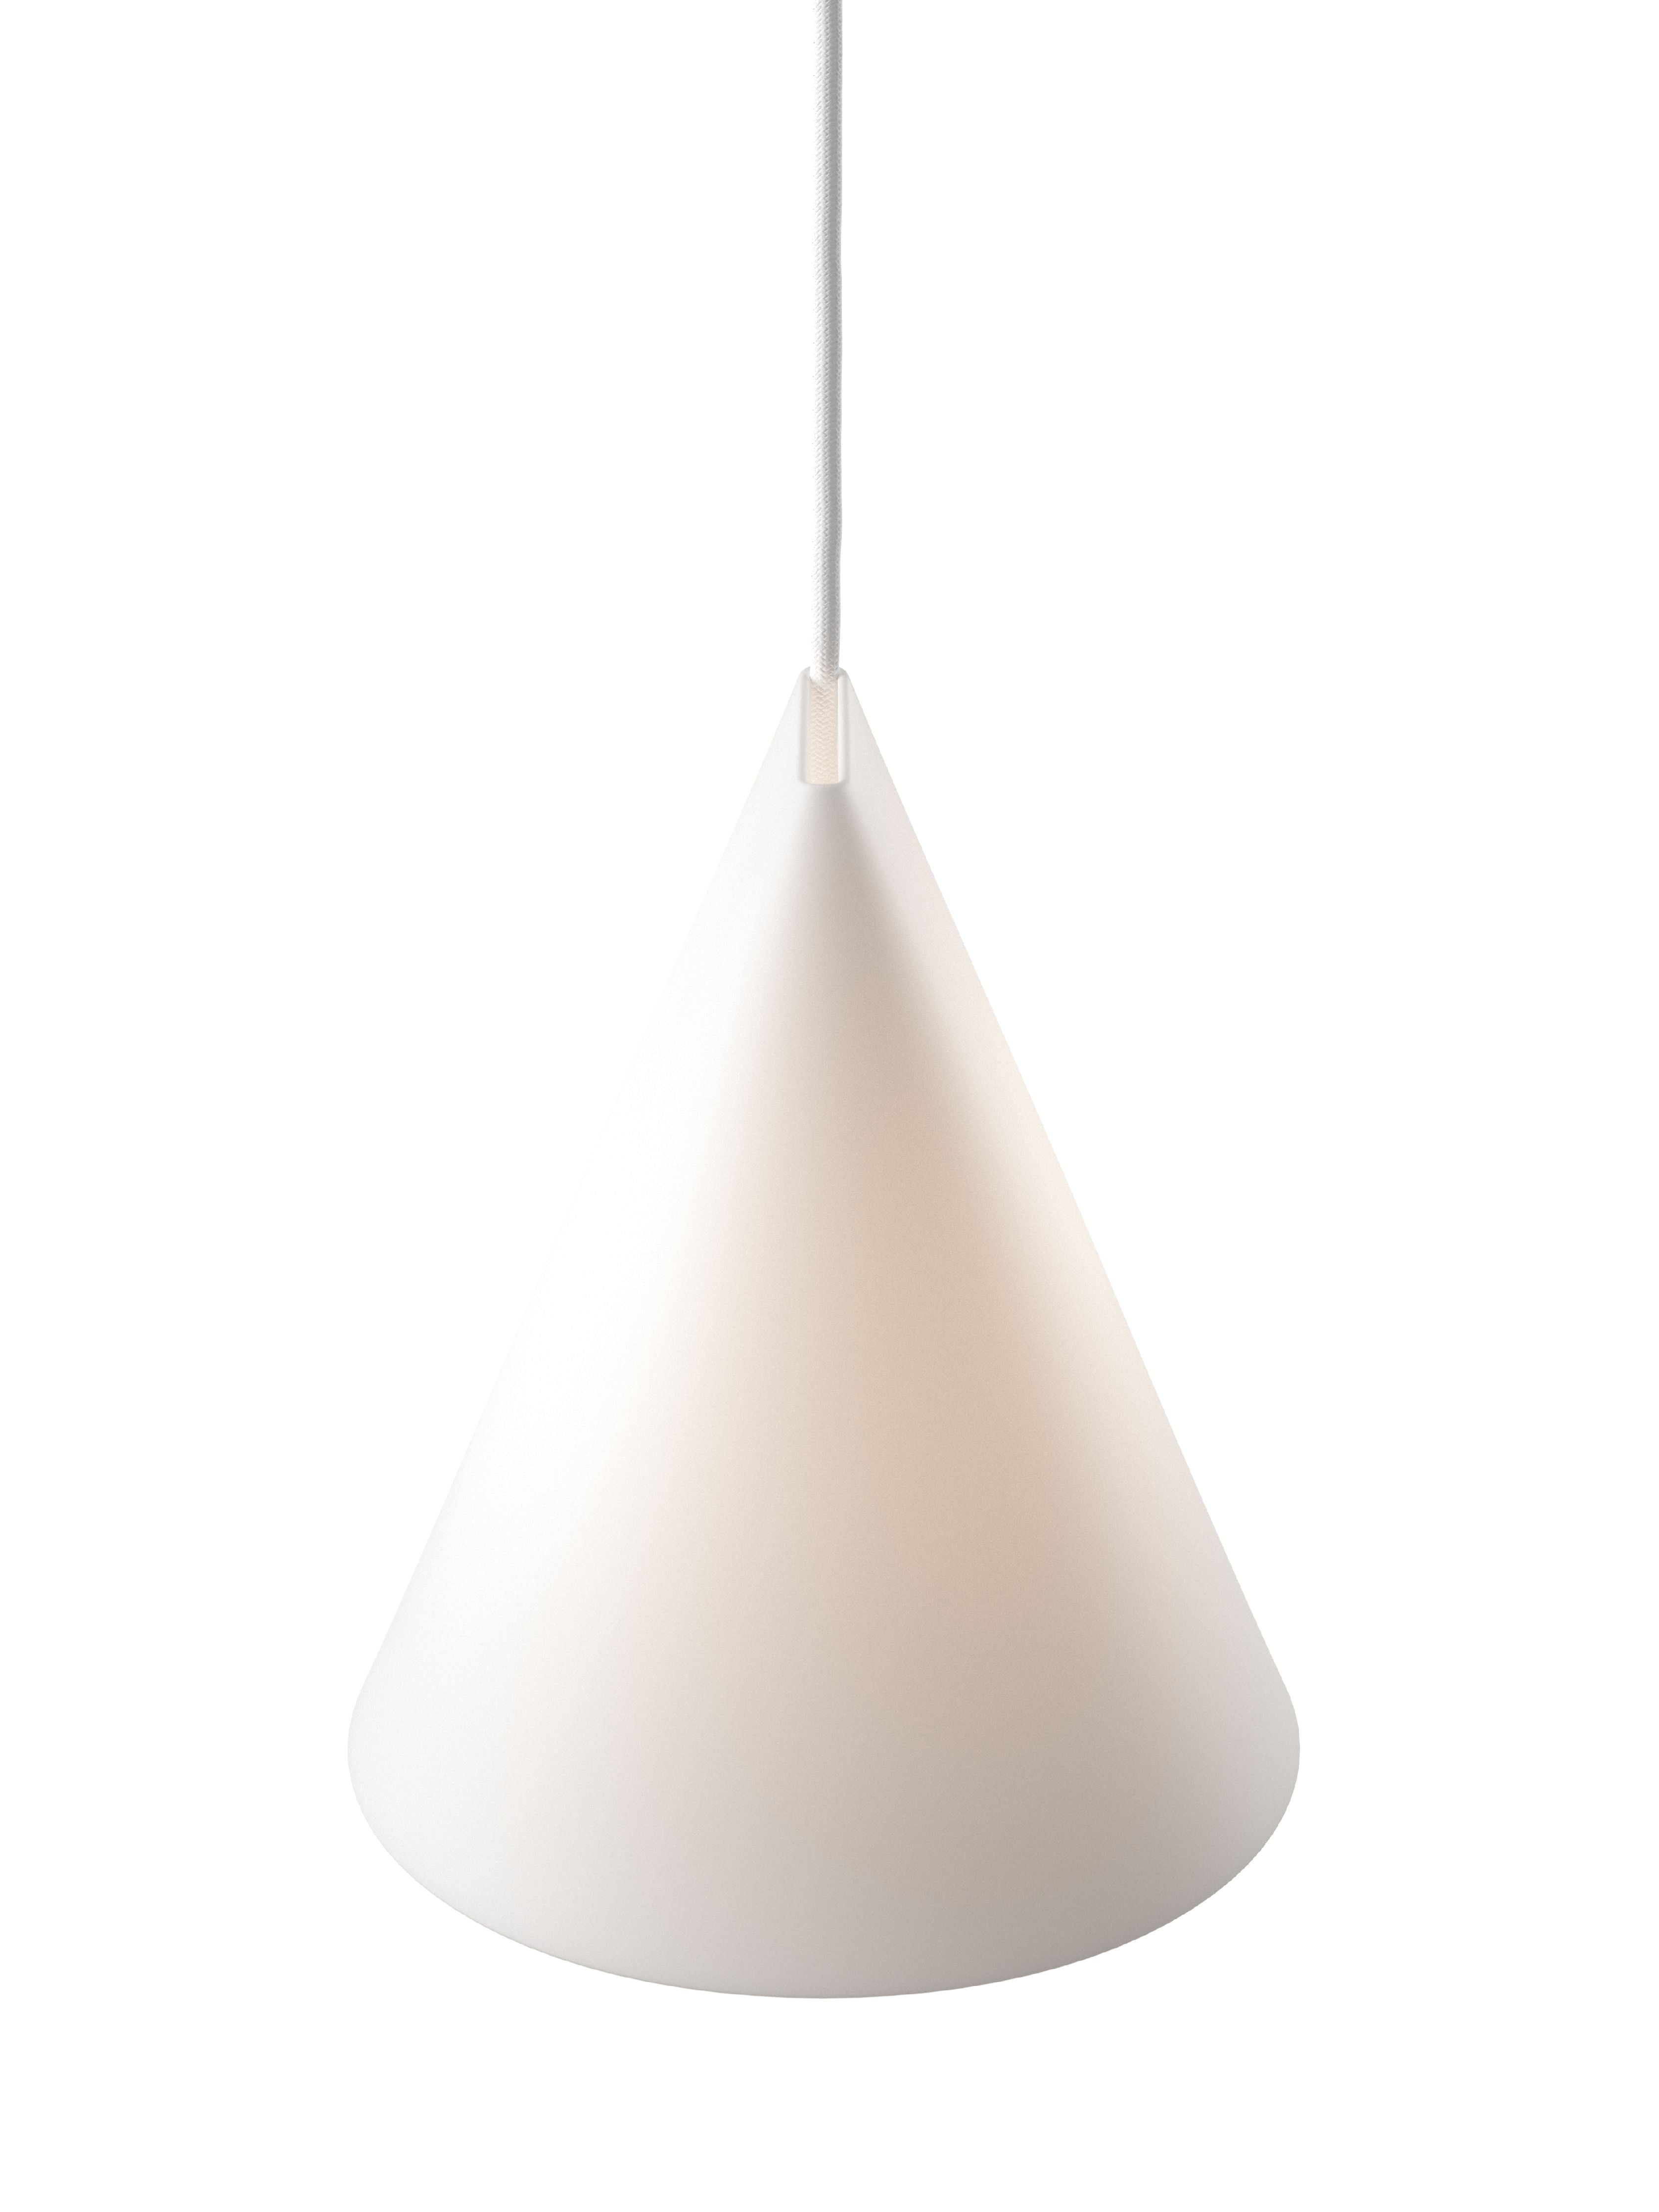 Moebe Ceramic Pendant Lamp 23 Cm, White